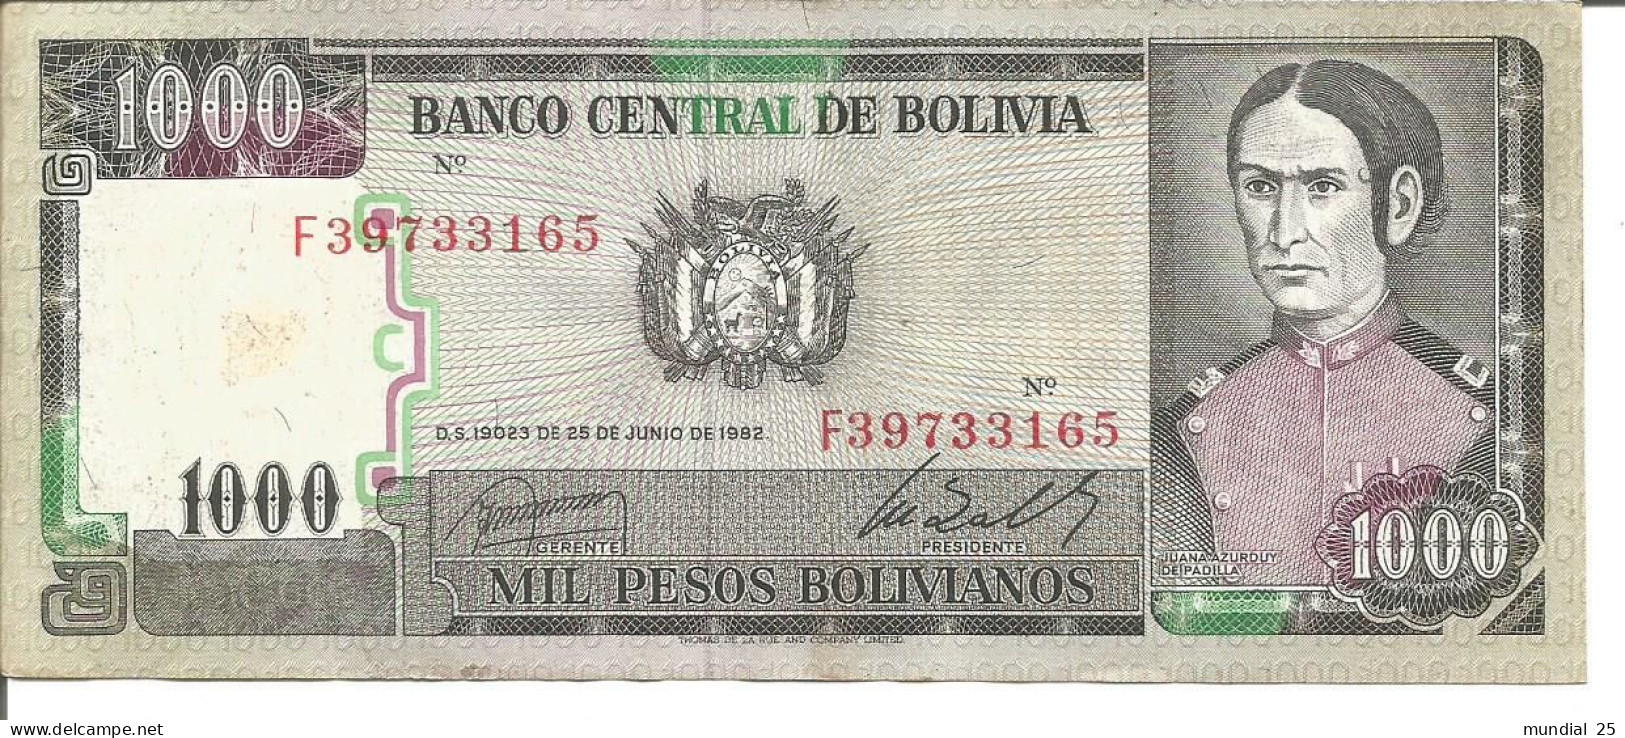 BOLIVIA 1.000 PESOS BOLIVIANOS - D.S 19023 DE 25/06/1962 - Bolivie